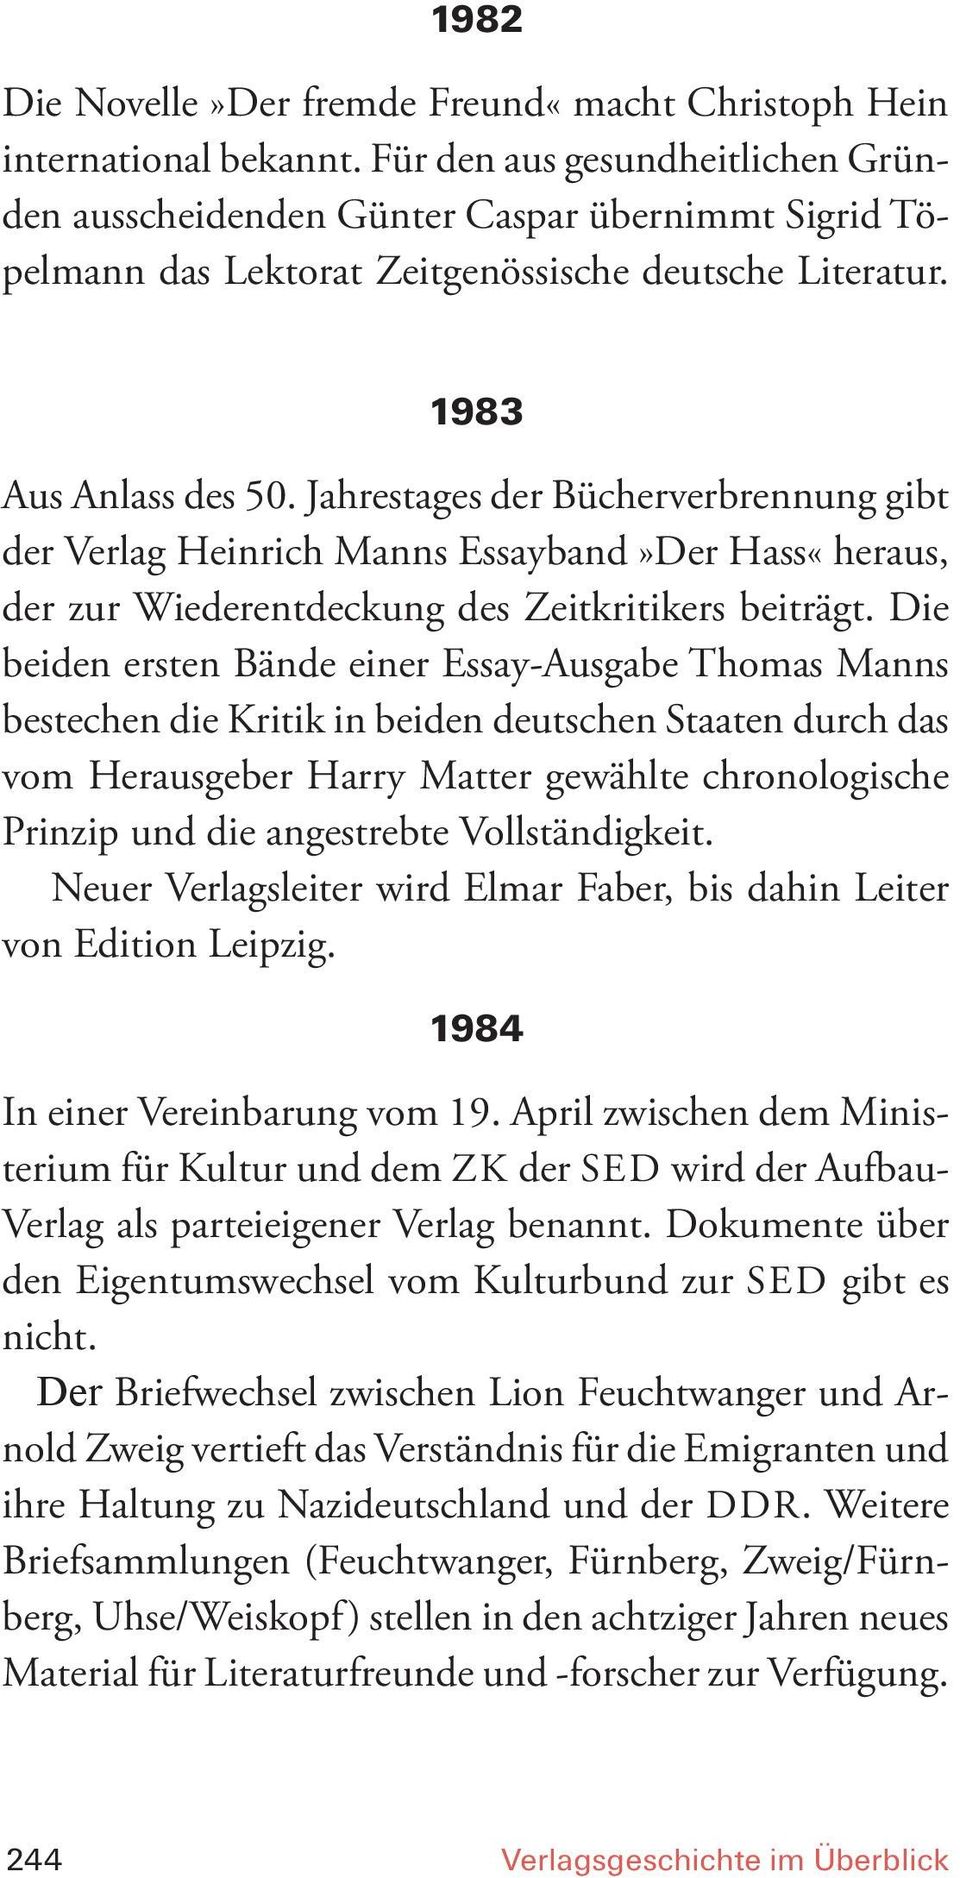 Jahrestages der Bücherverbrennung gibt der Verlag Heinrich Manns Essayband»Der Hass«heraus, der zur Wiederentdeckung des Zeitkritikers beiträgt.